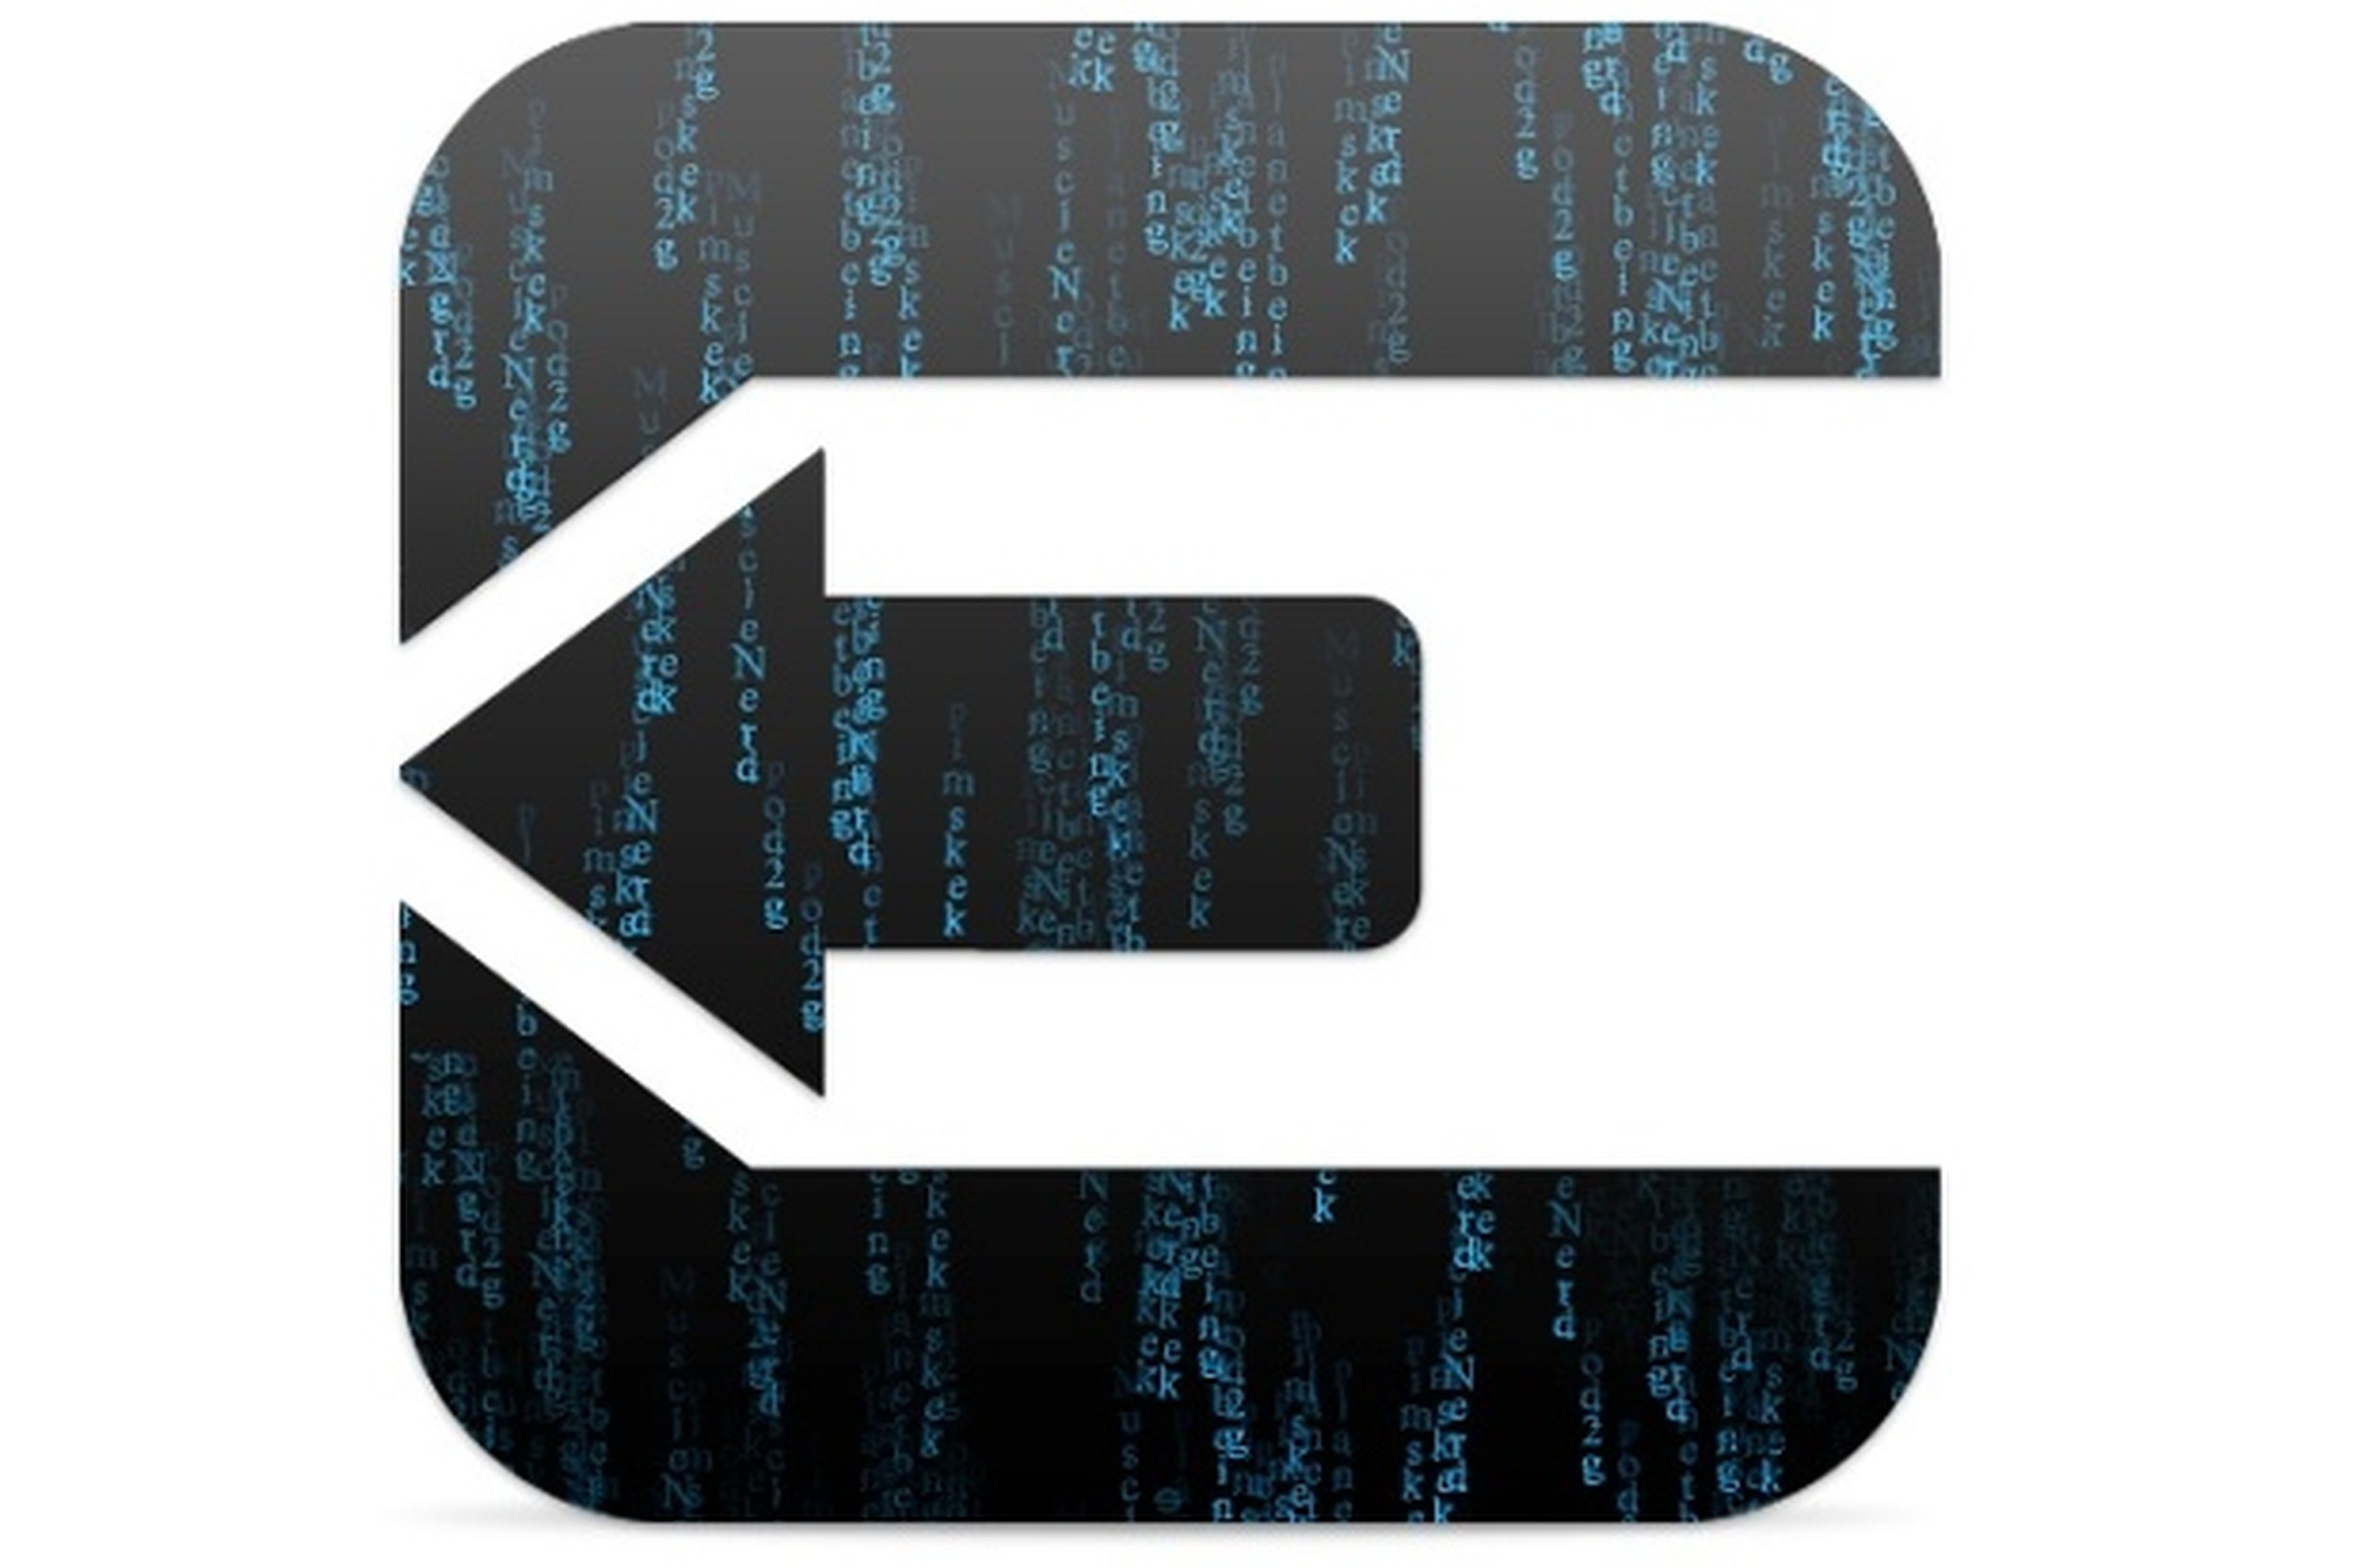 Evasi0n puede tener los días contados con la nueva actualización iOS 6.1.3